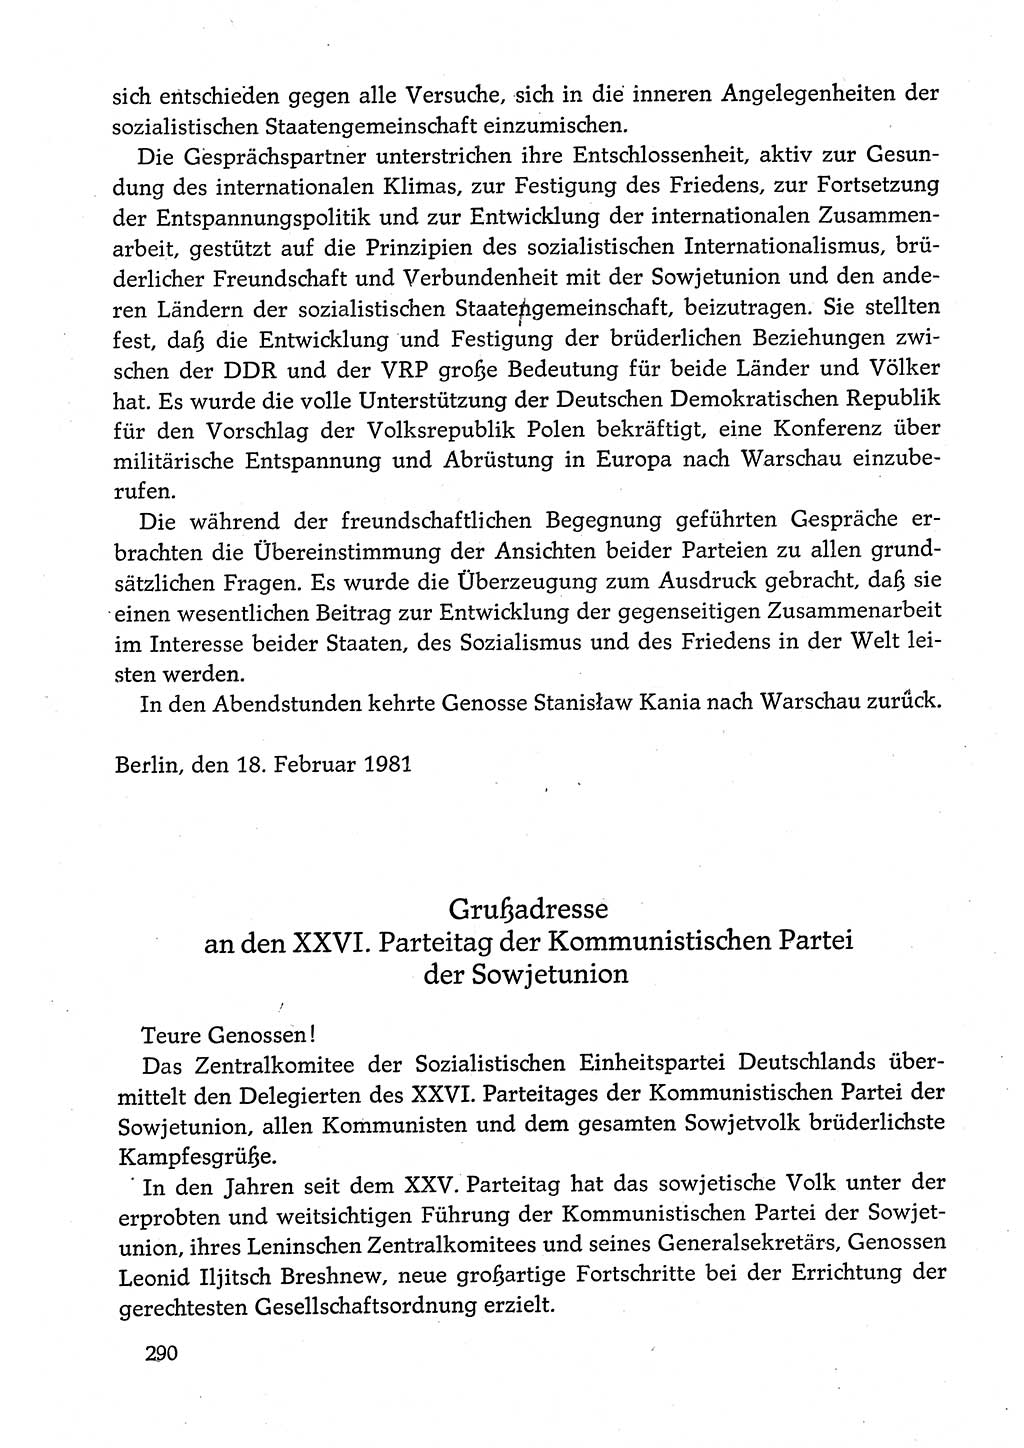 Dokumente der Sozialistischen Einheitspartei Deutschlands (SED) [Deutsche Demokratische Republik (DDR)] 1980-1981, Seite 290 (Dok. SED DDR 1980-1981, S. 290)